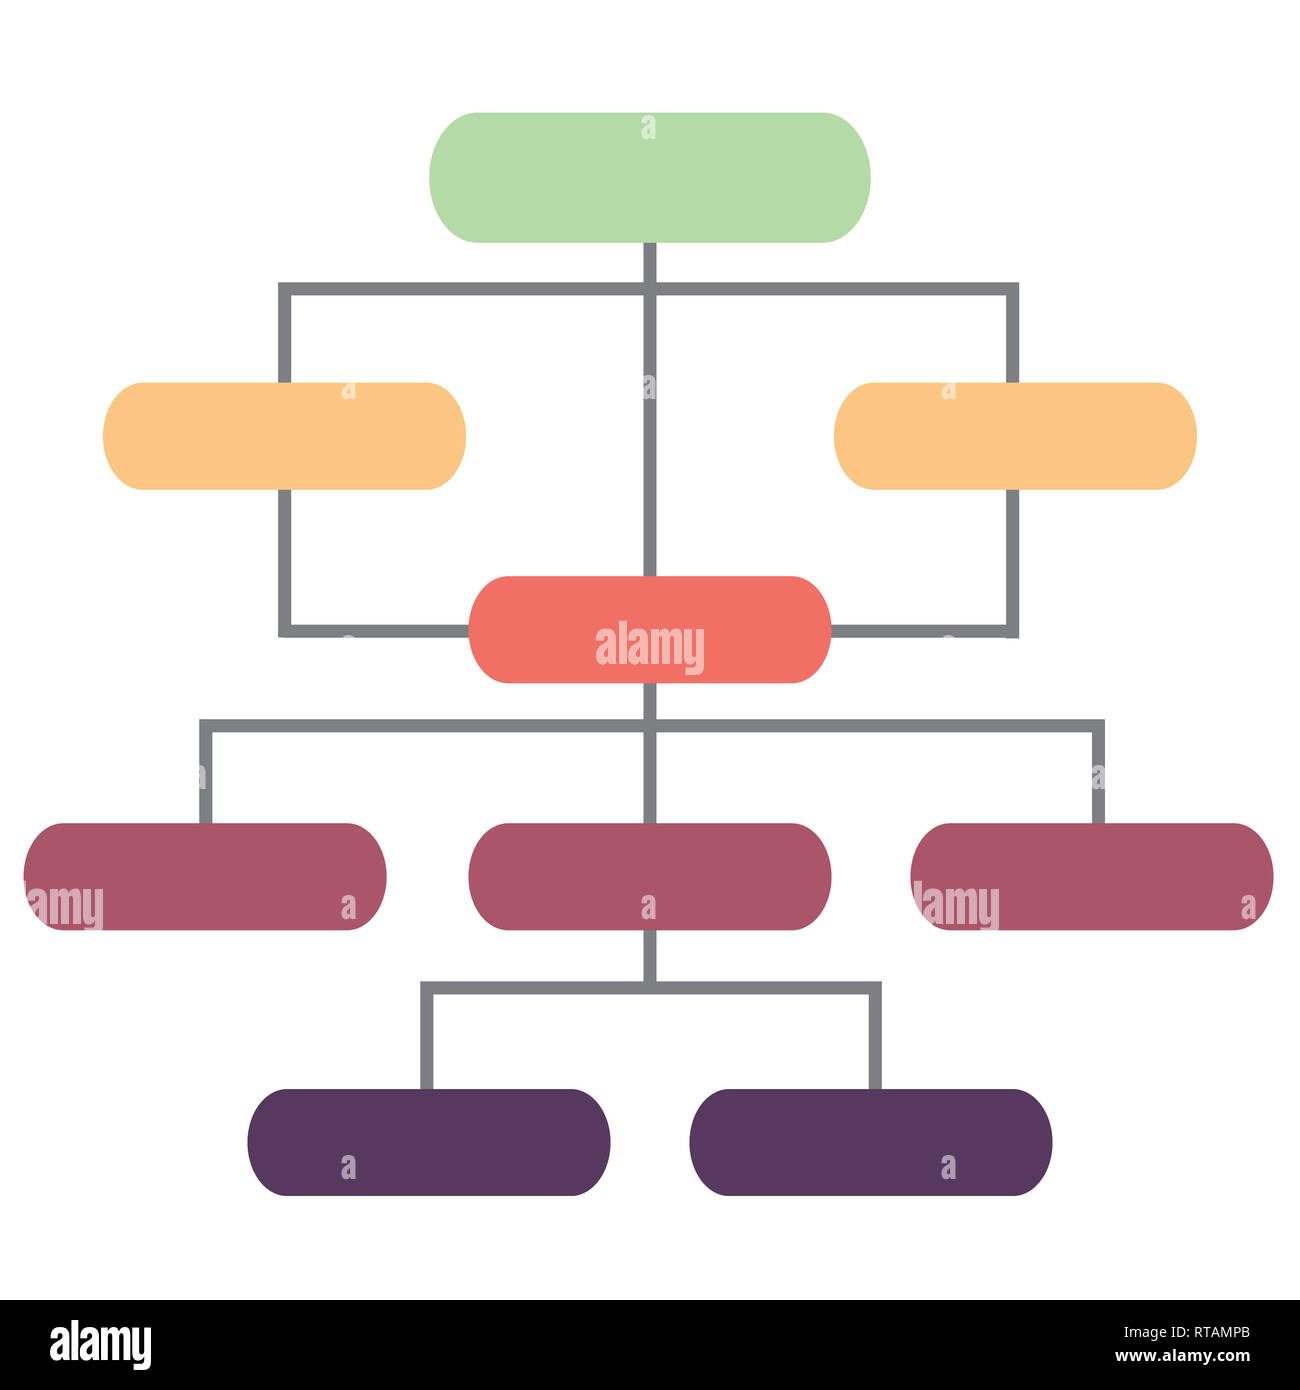 Rta Organization Chart